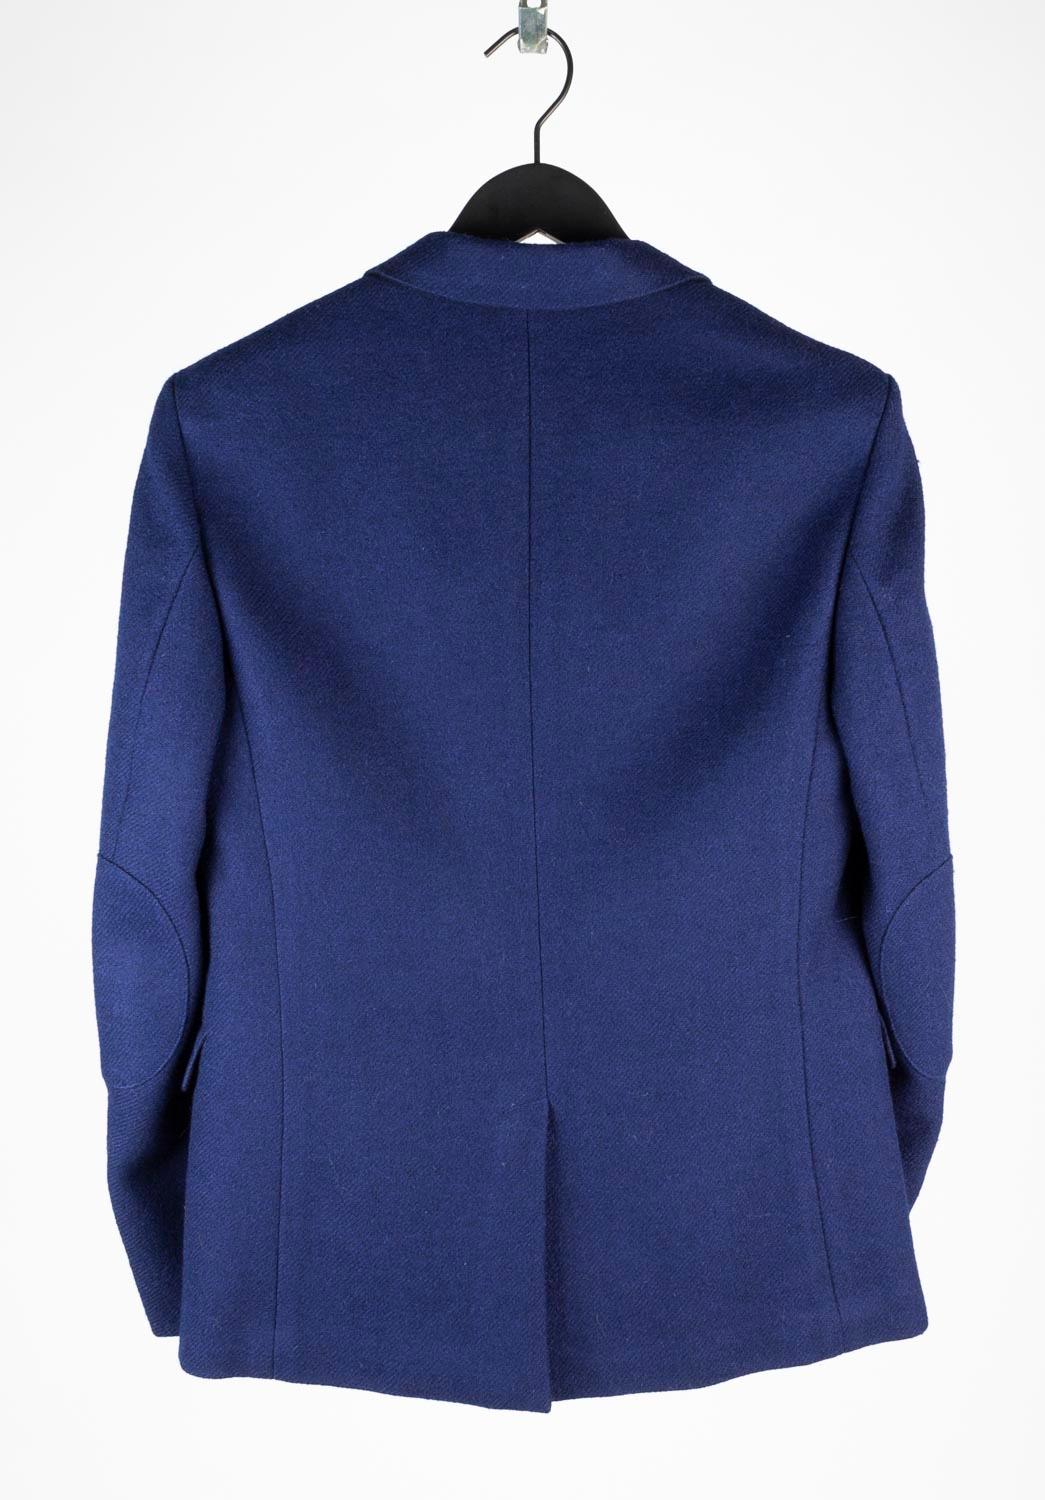 Prada Men Jacket Blazer Casual Size 50, S625 5